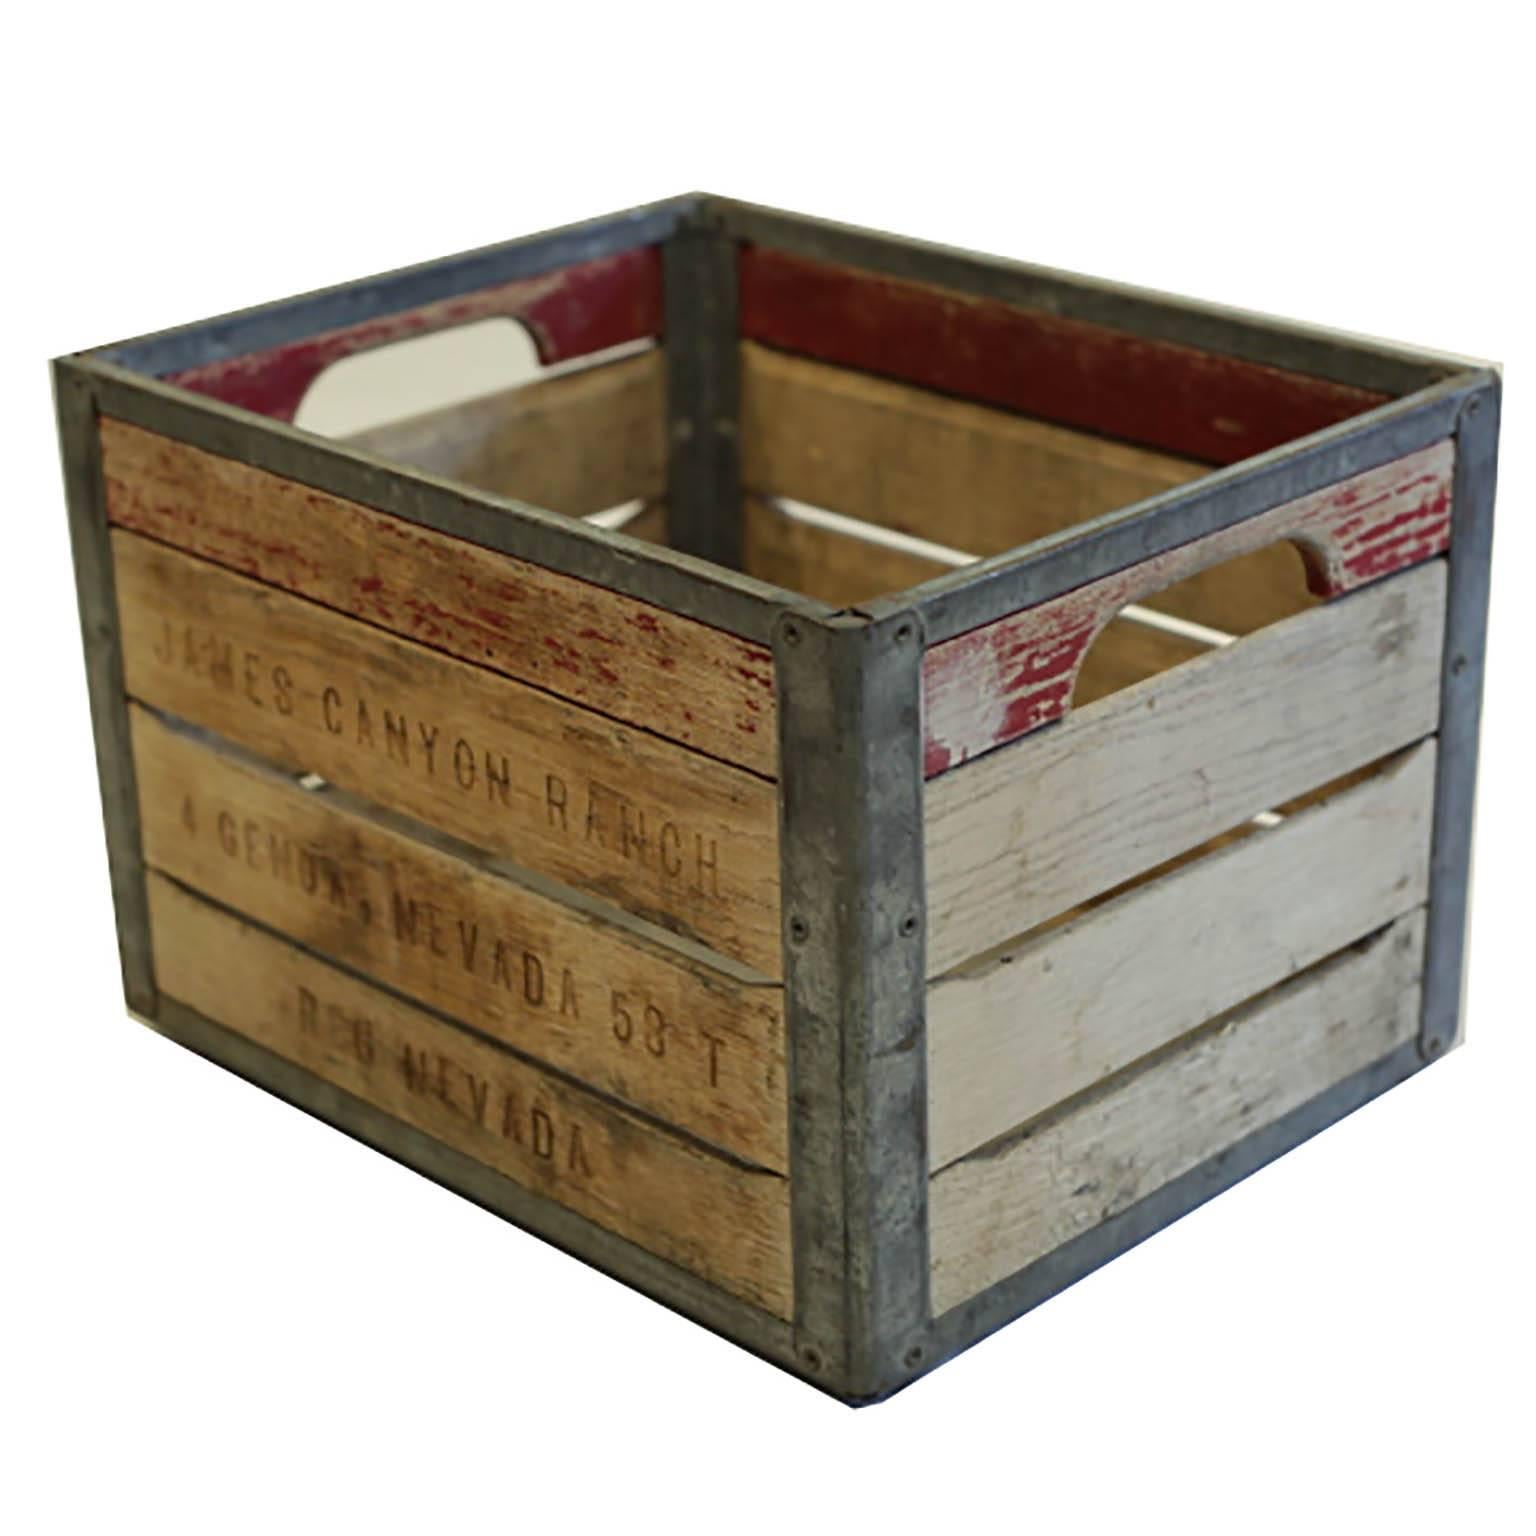 Metal Milk Crate Circa 1940 1950s, Old Wooden Milk Crates